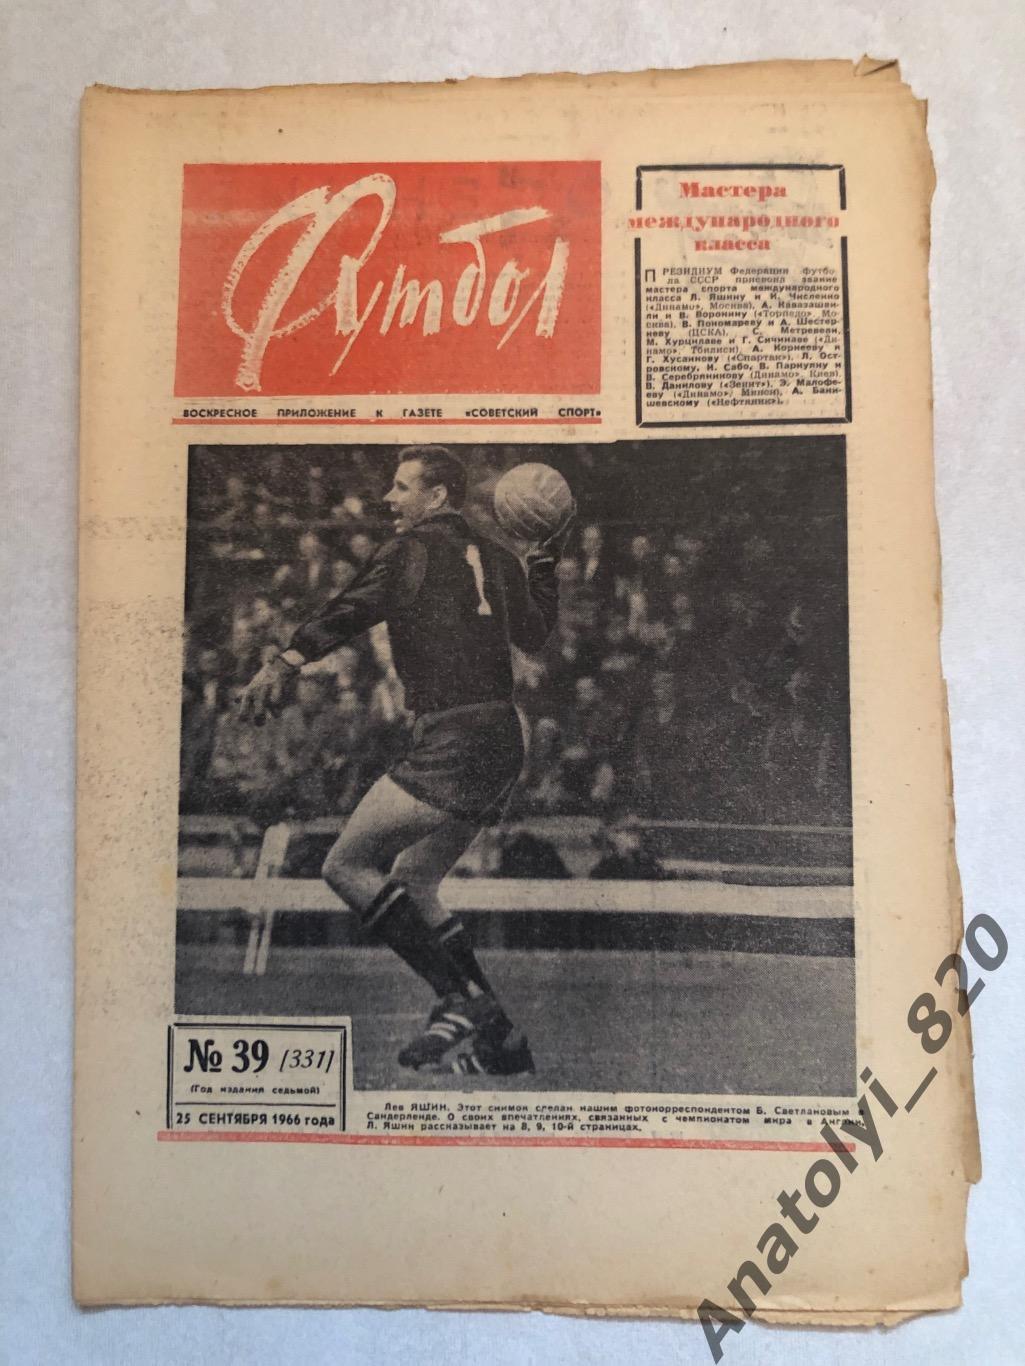 Еженедельник футбол номер 39 от 25.09.1966